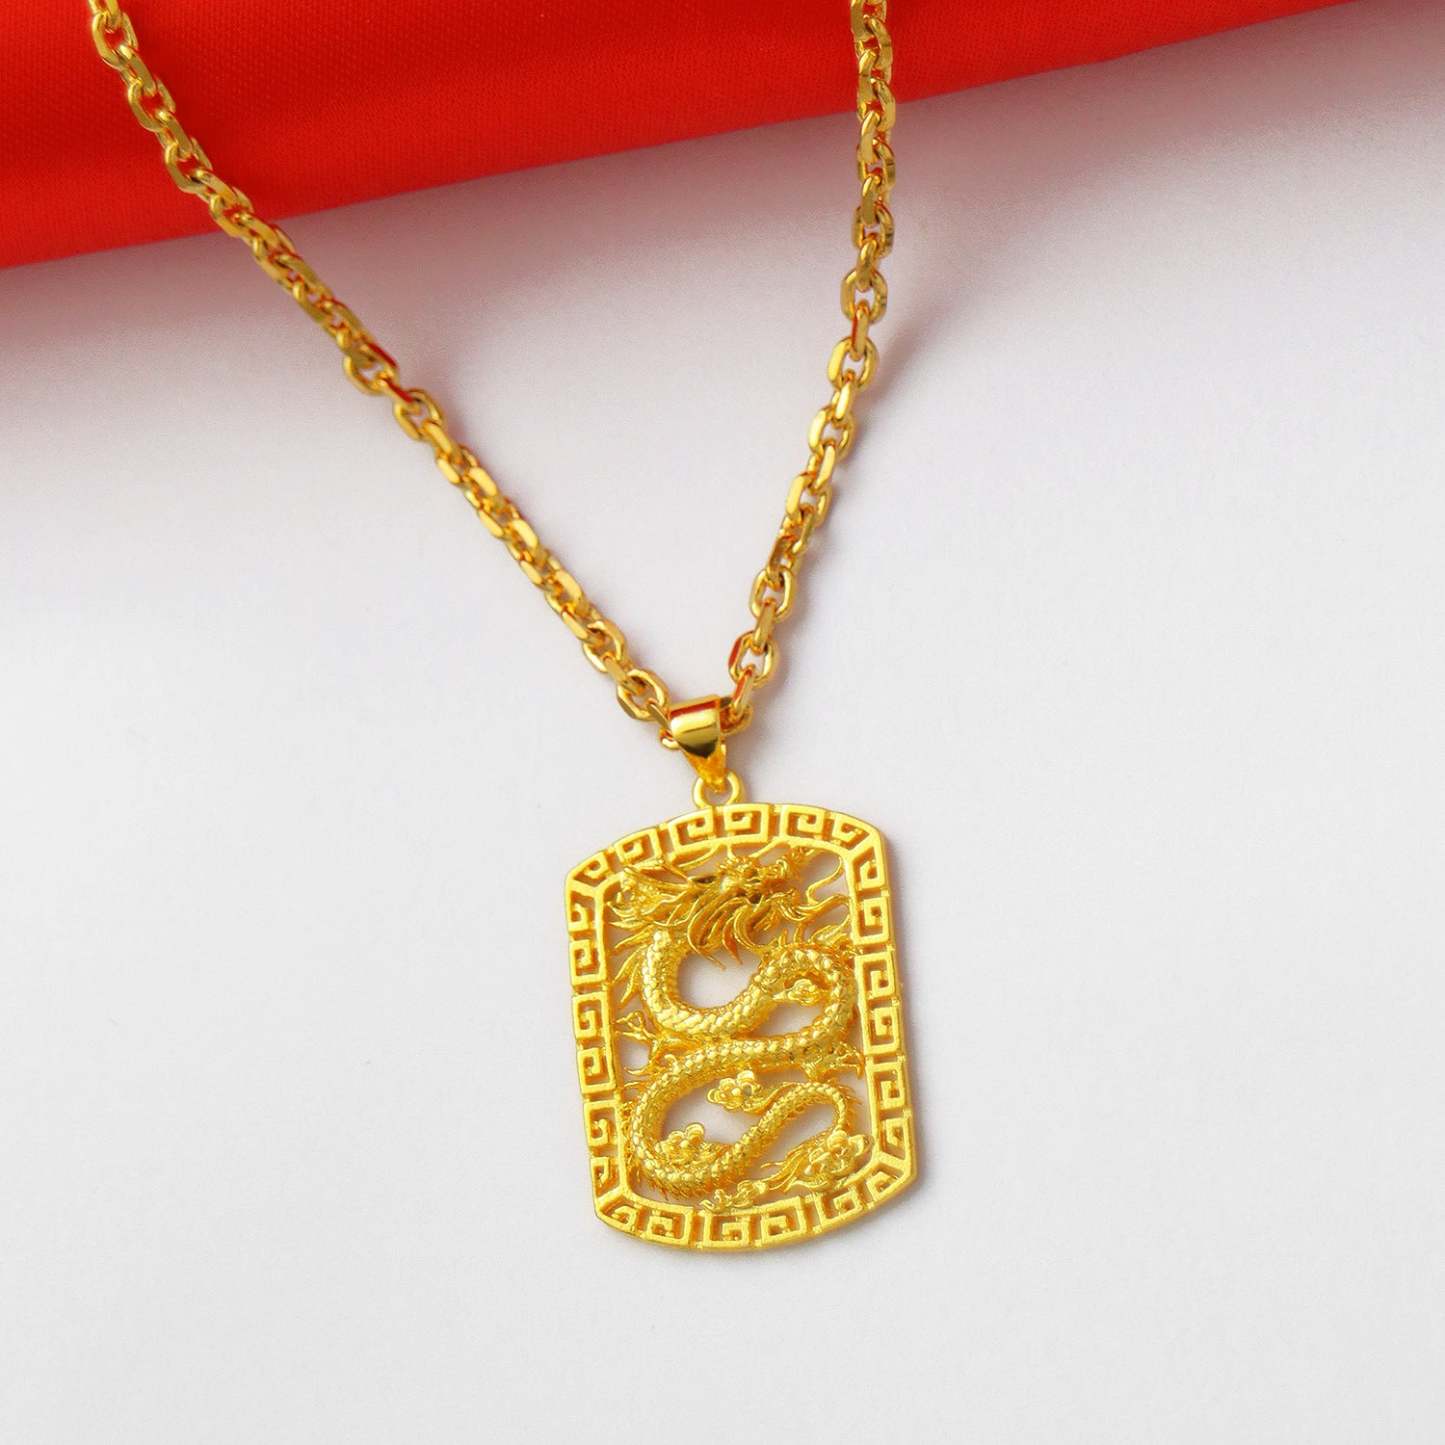 Domineering Golden Dragon Necklace Hip-hop Trendy Men's Jewelry - soufeelau